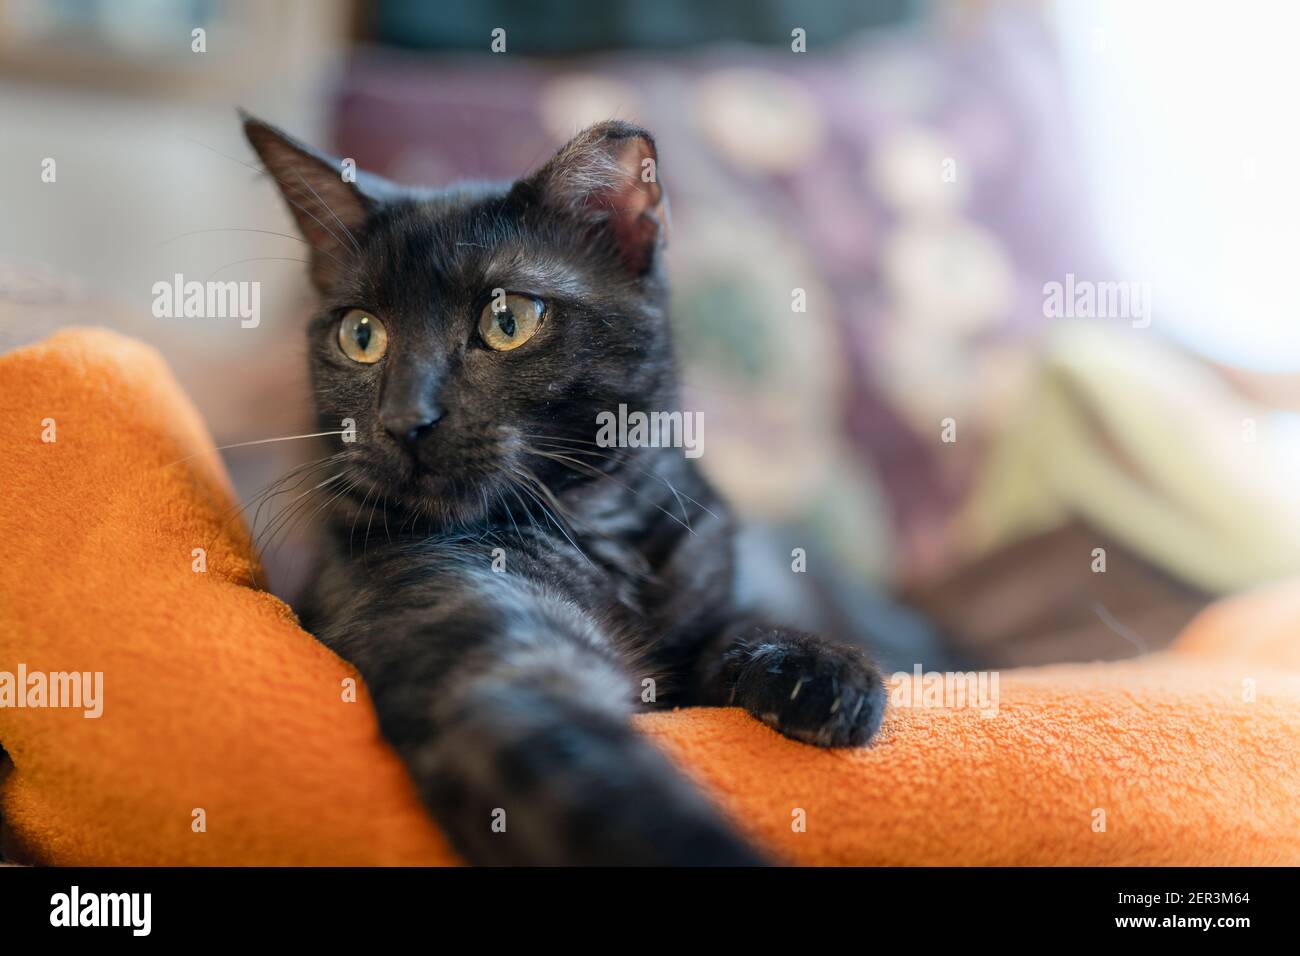 gatto nero con occhi verdi distesi su una coperta arancione, guarda la fotocamera. primo piano Foto Stock